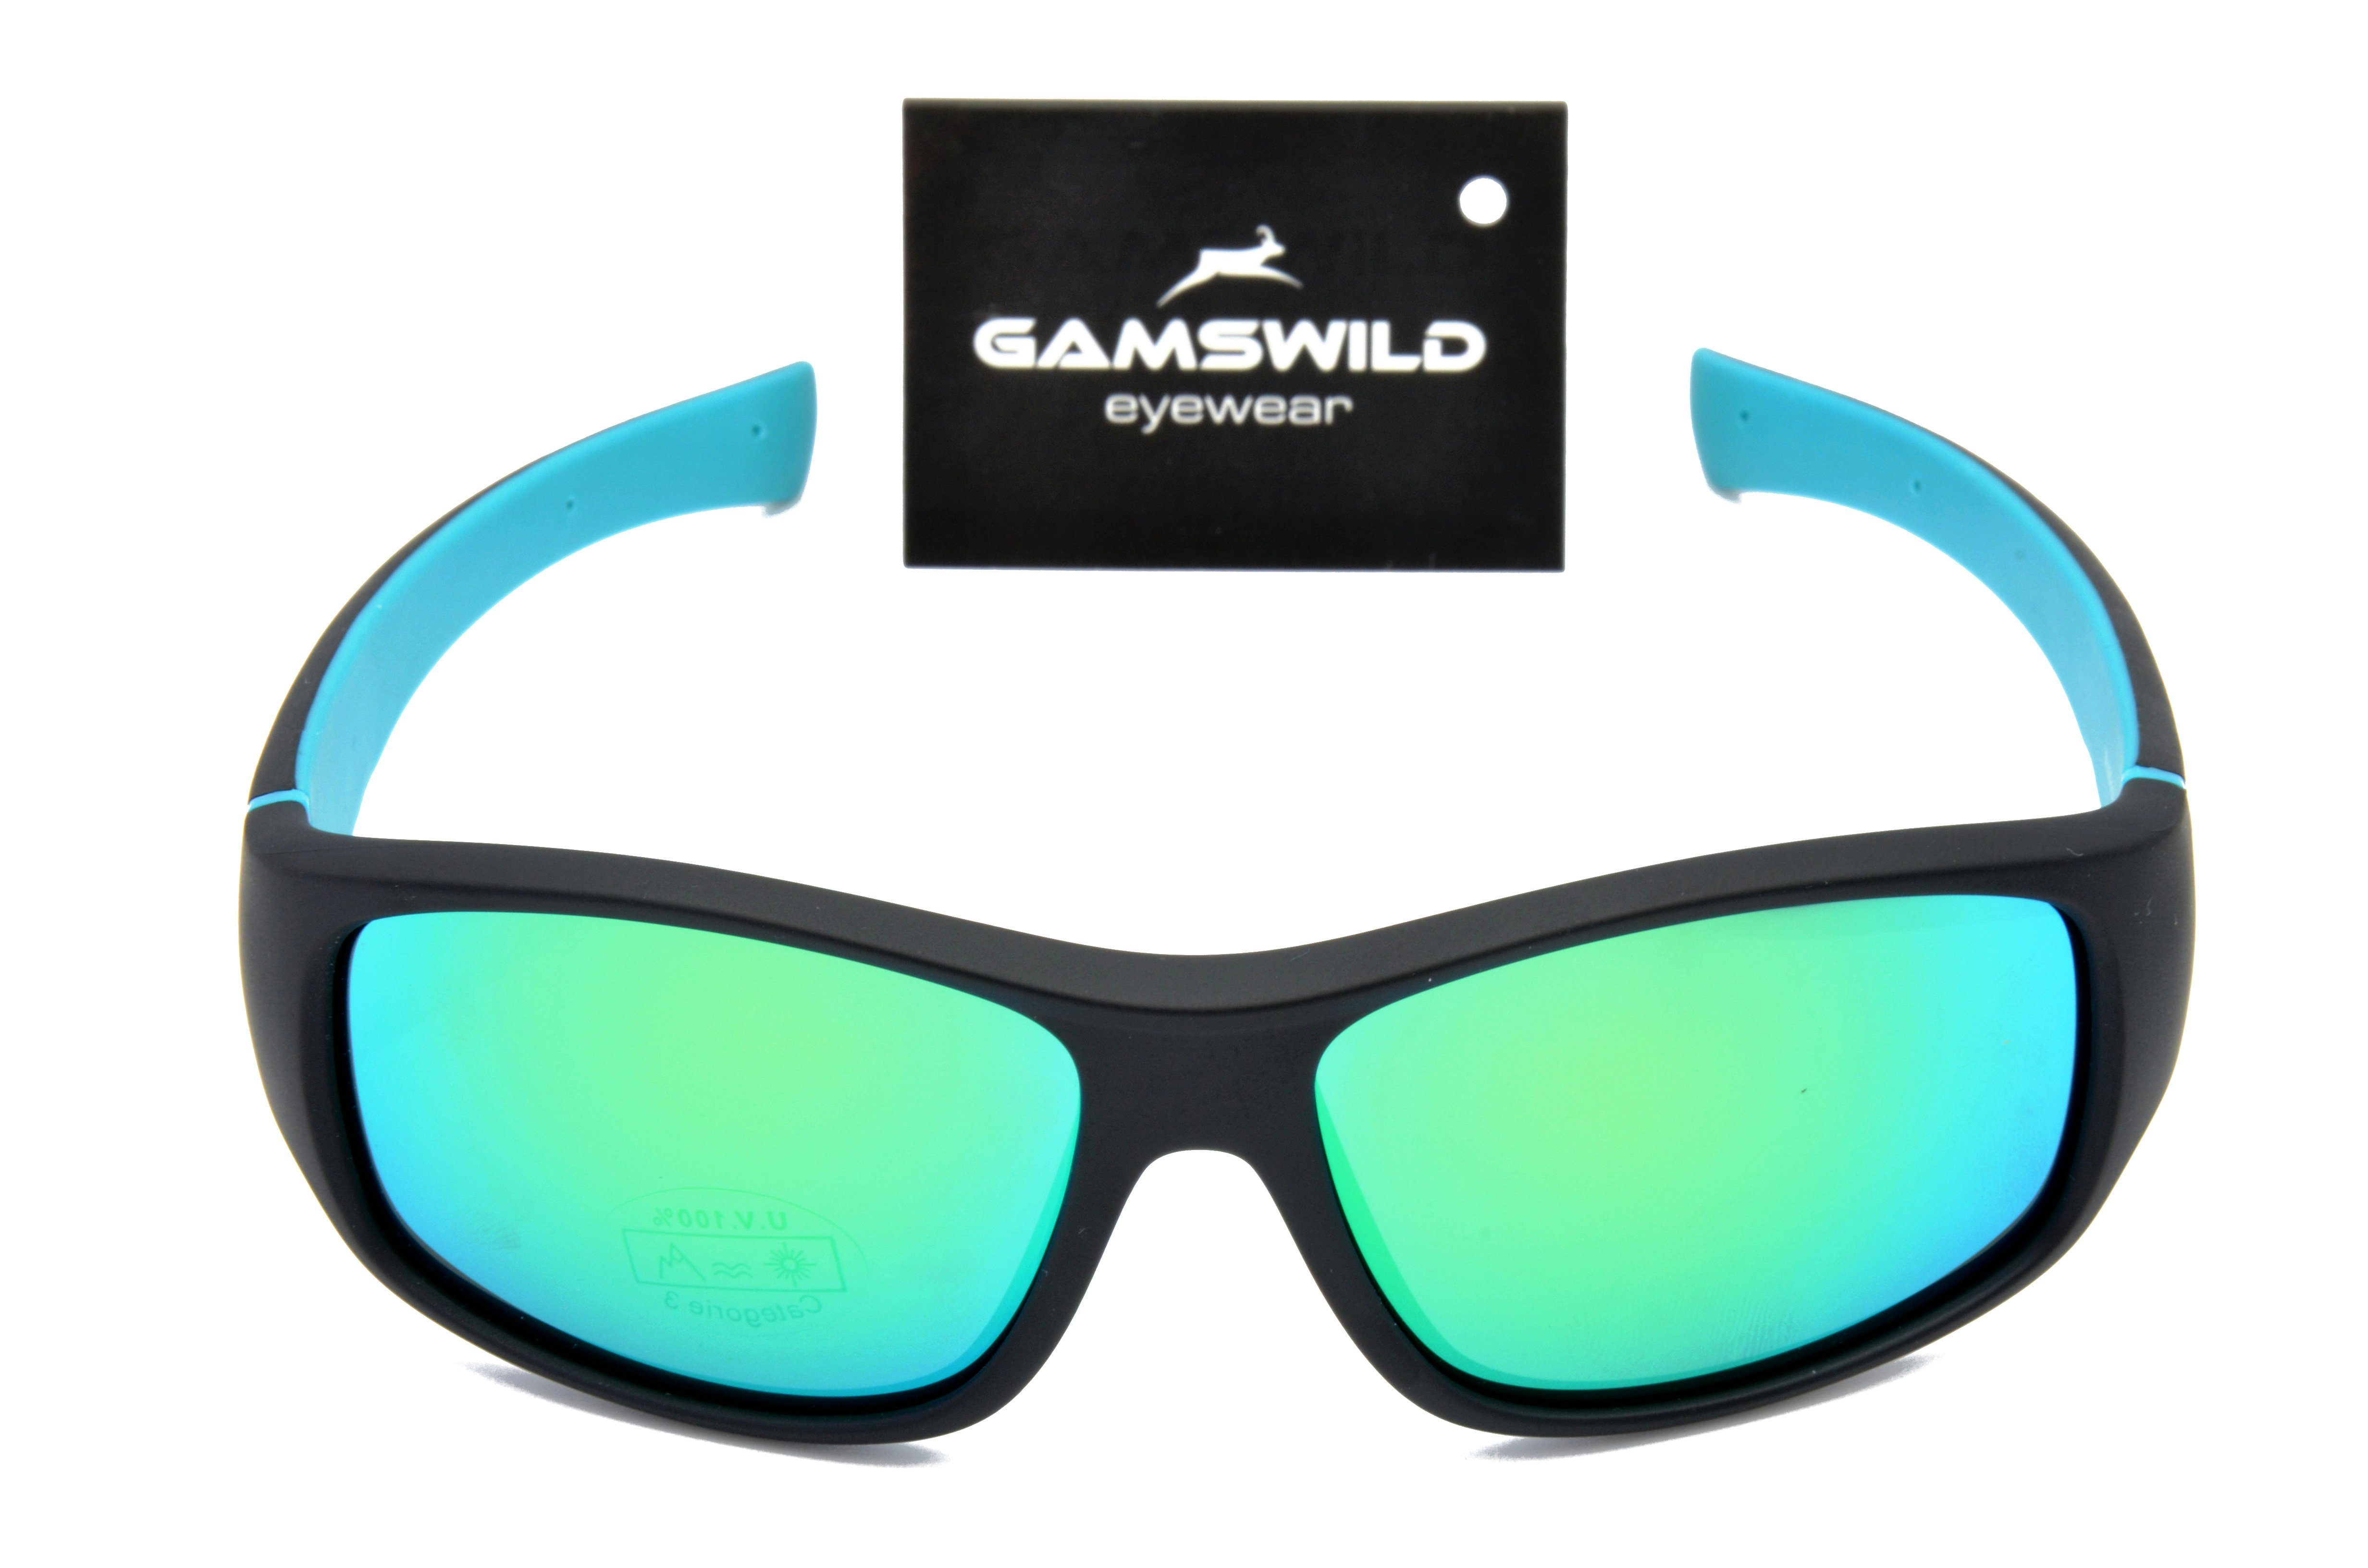 Gamswild Sonnenbrille WJ5019/20 GAMSKIDS Jugendbrille J. 8-18 Kinderbrille Unisex türkis kids